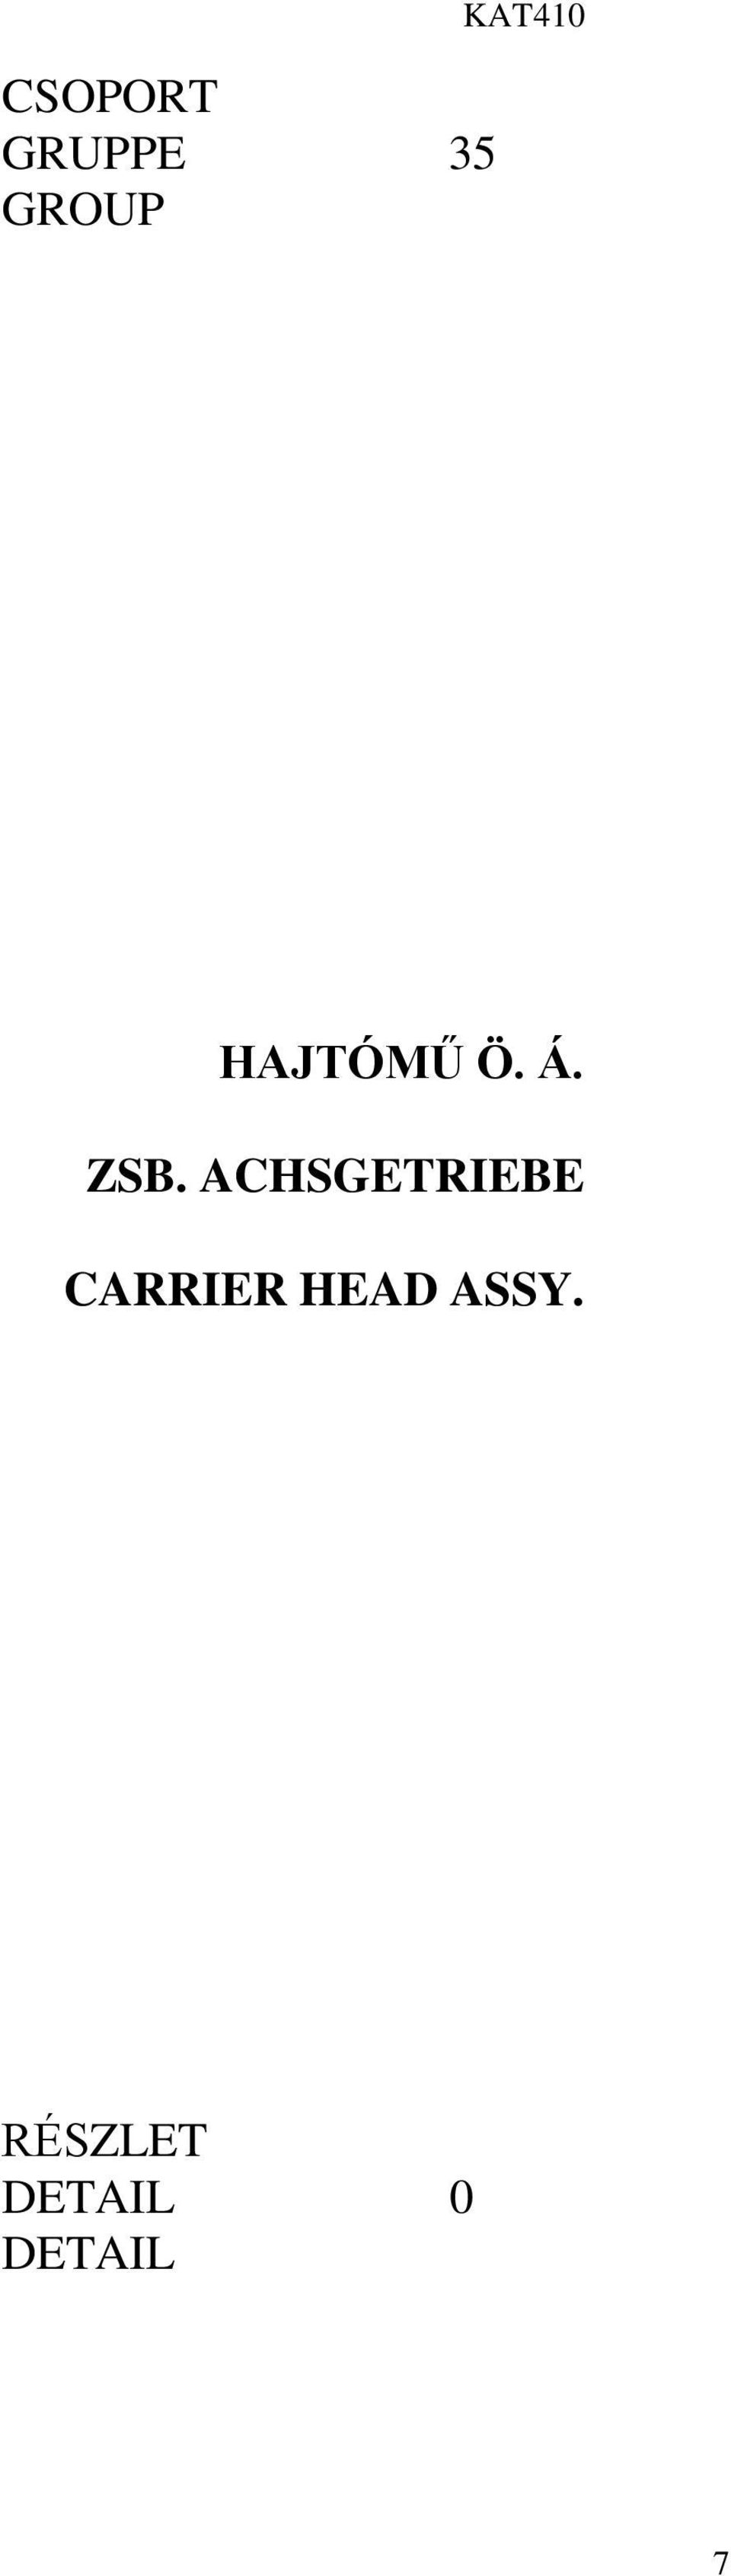 ACHSGETRIEBE CARRIER HEAD